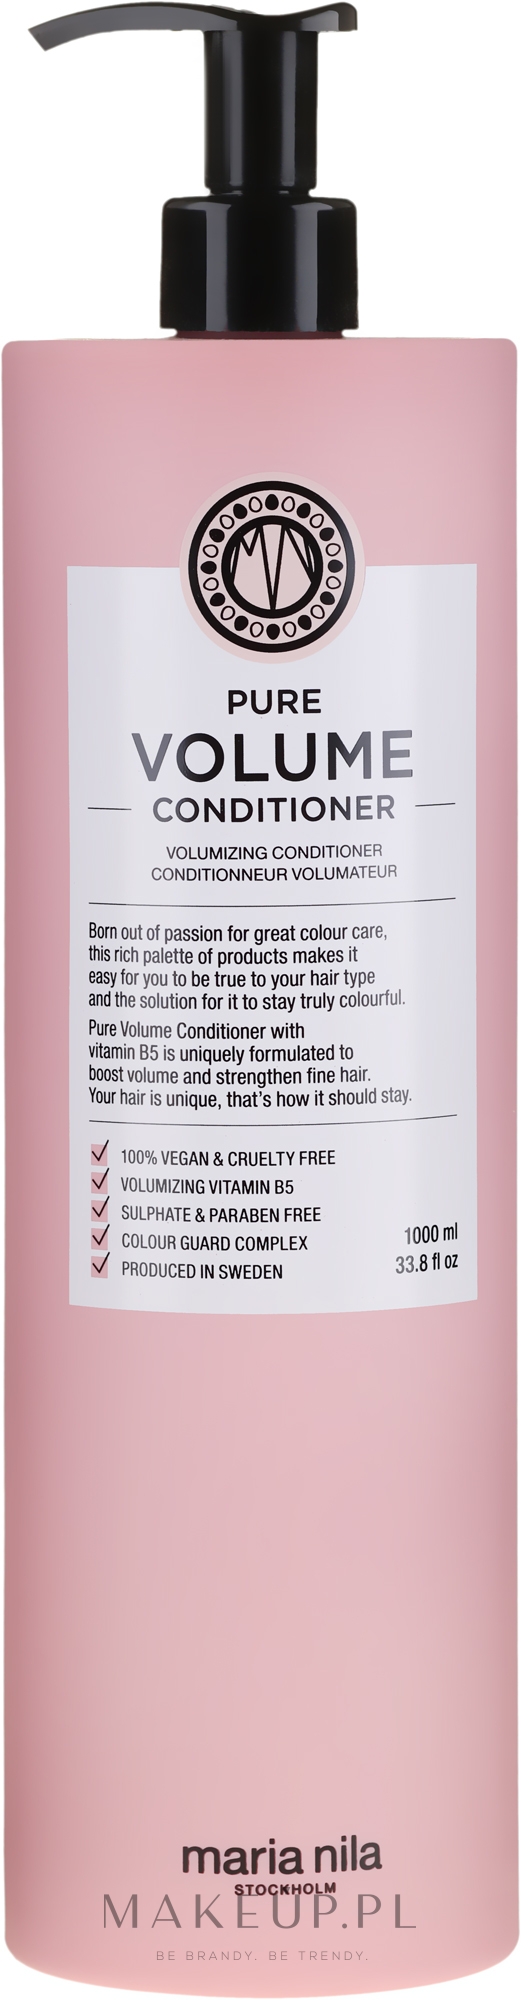 Nawilżająca odżywka dodająca włosom objętości - Maria Nila Pure Volume Conditioner — Zdjęcie 1000 ml